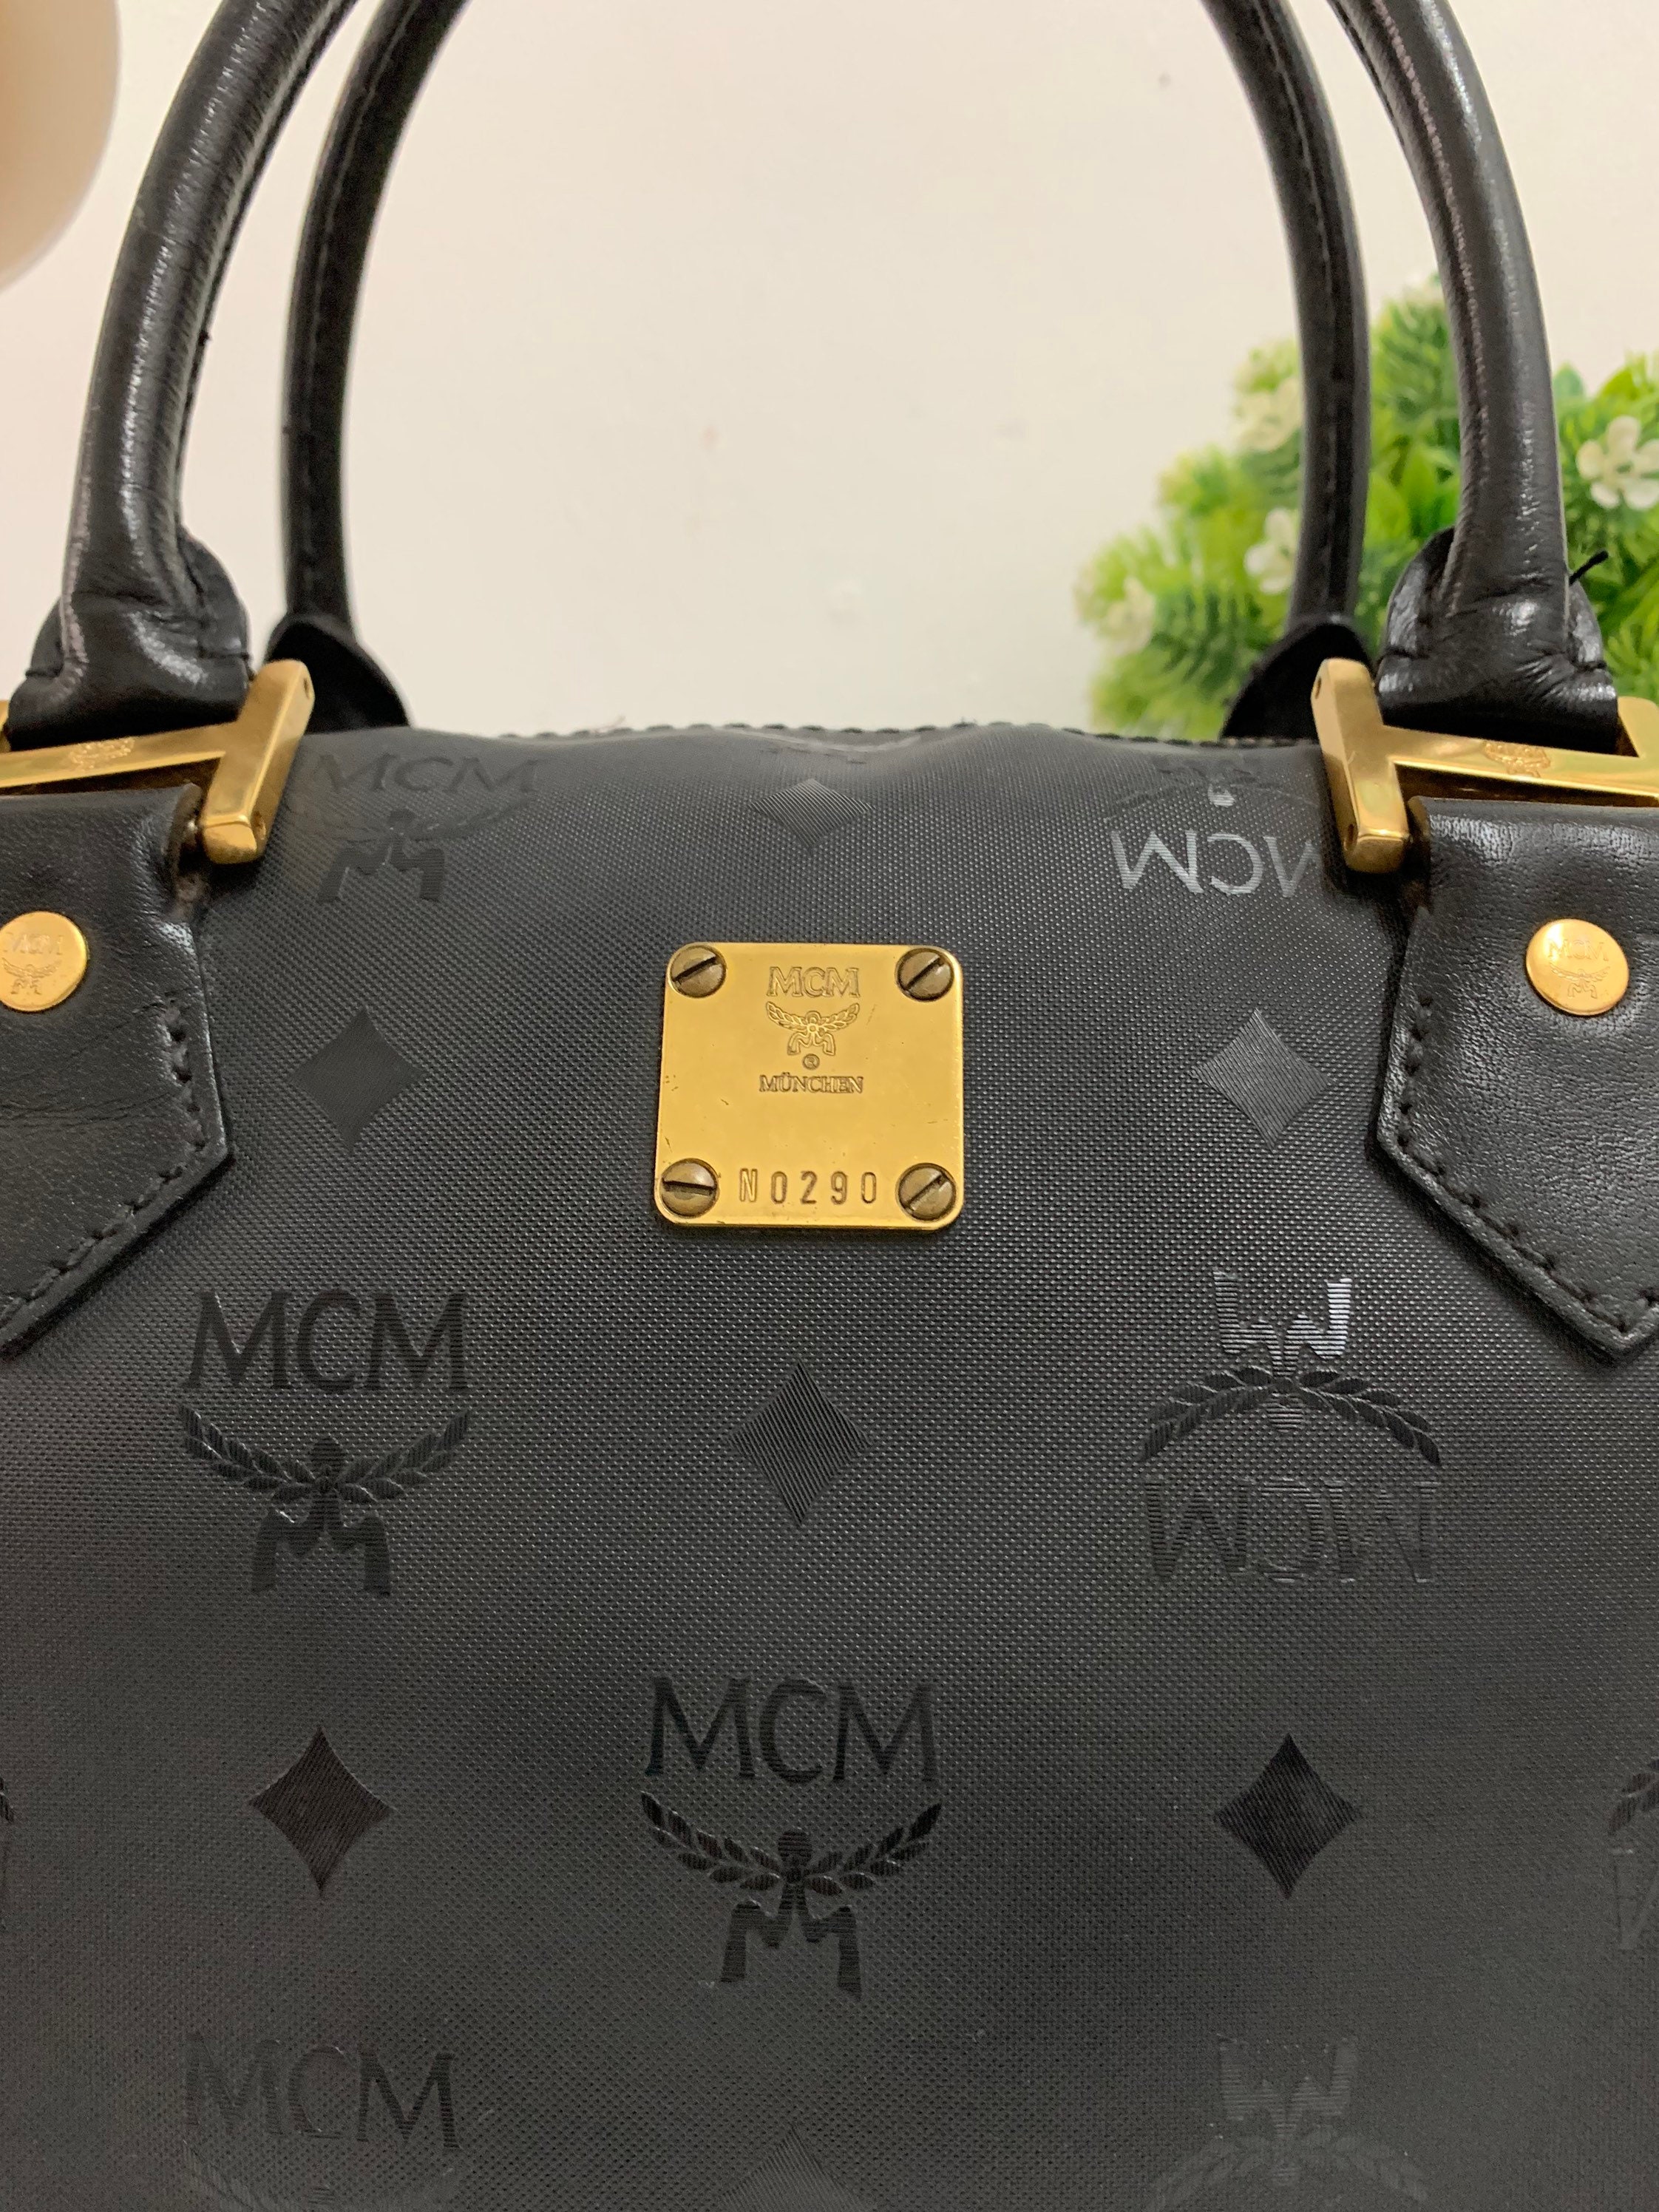 Guaranteed Authentic Vintage MCM Speedy Handbag for Sale in Los